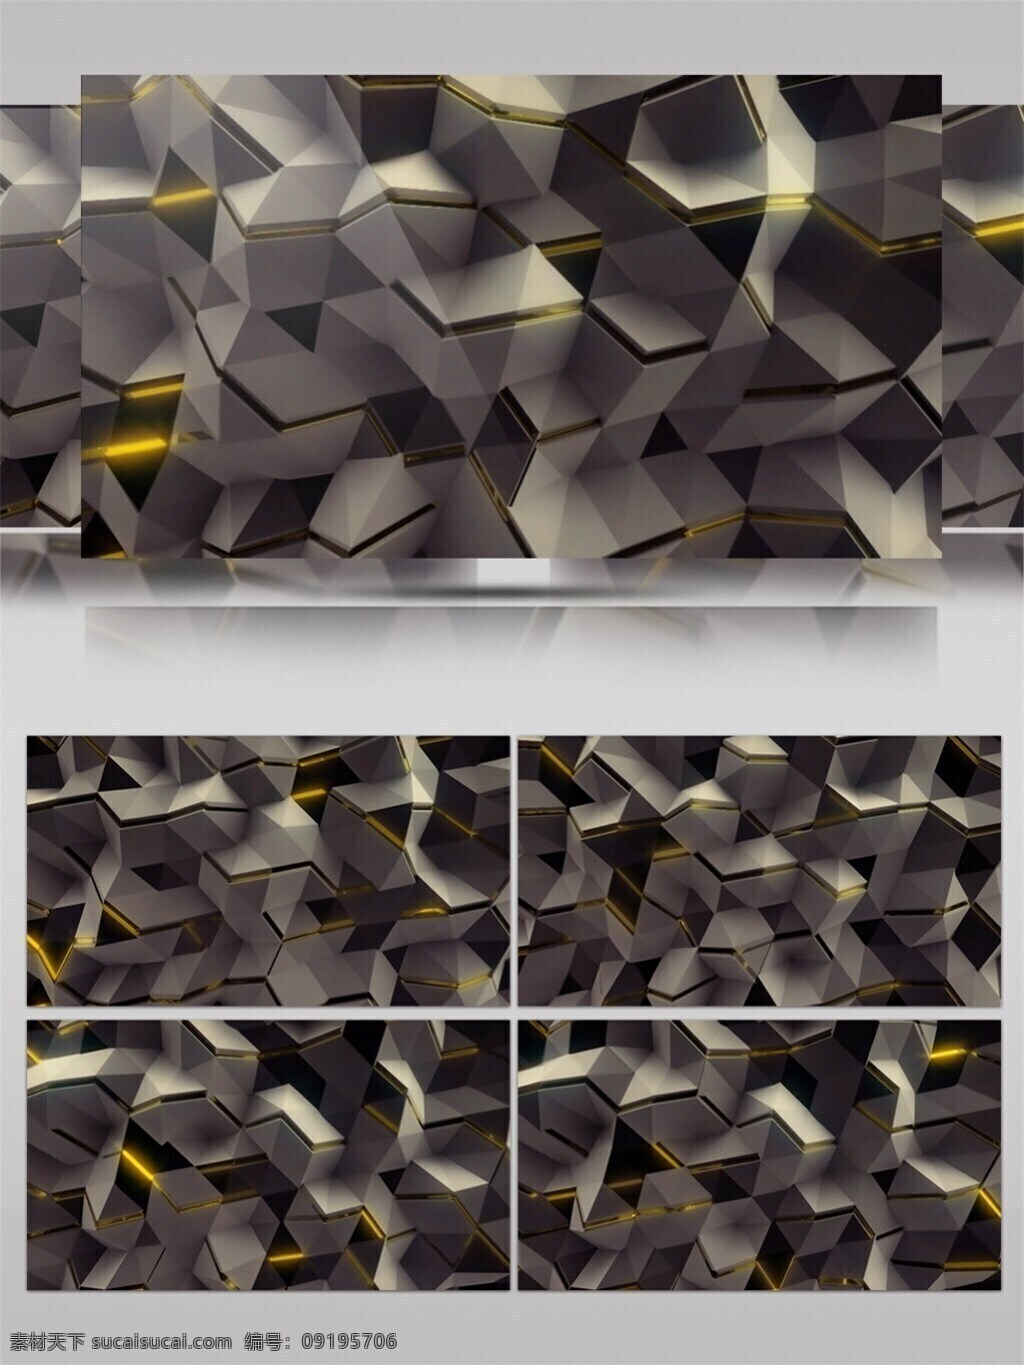 暗 银色 几何 格子 高清 视频 炫酷格子 震撼大气 立体几何 装饰风格 动态展示 房间装饰 壁纸图案 背景 特效